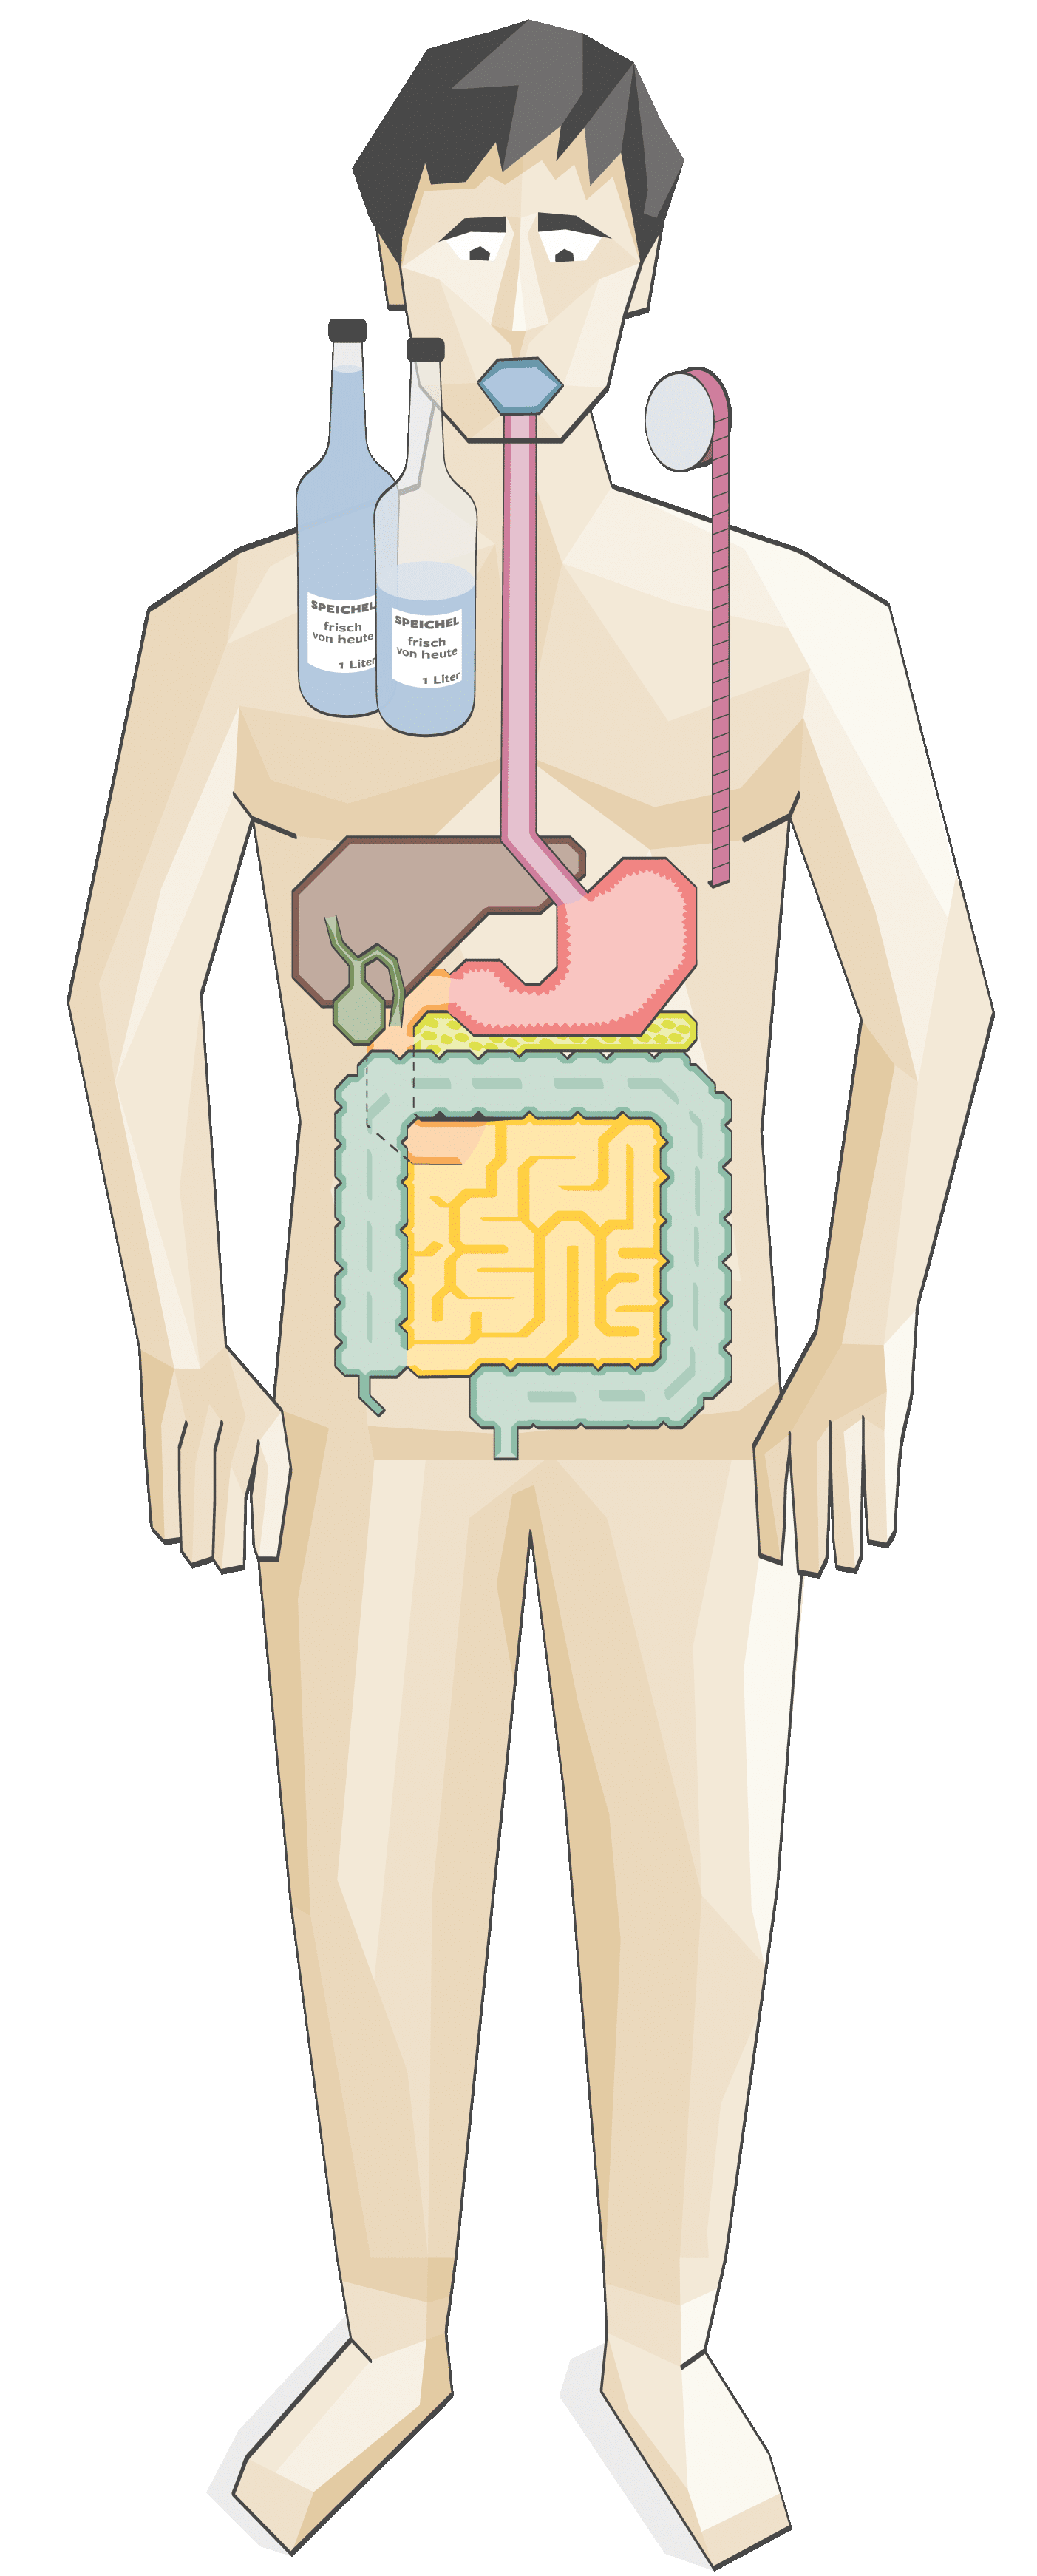 Illustration des menschlichen Verdauungssystems